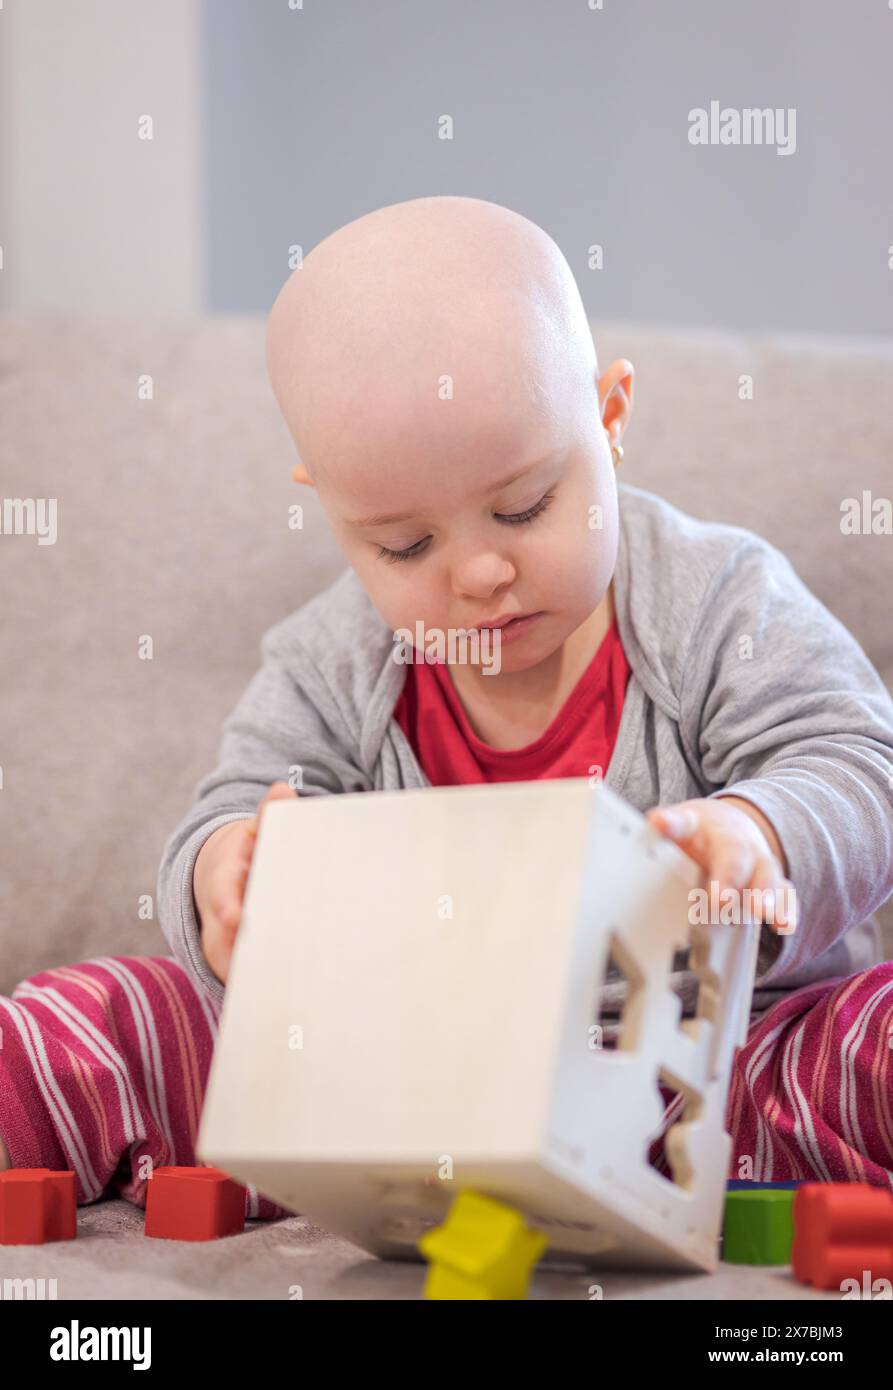 Bébé fille avec le cancer et la perte de cheveux due à la chimiothérapie jouant avec le jouet en bois sur le canapé Banque D'Images